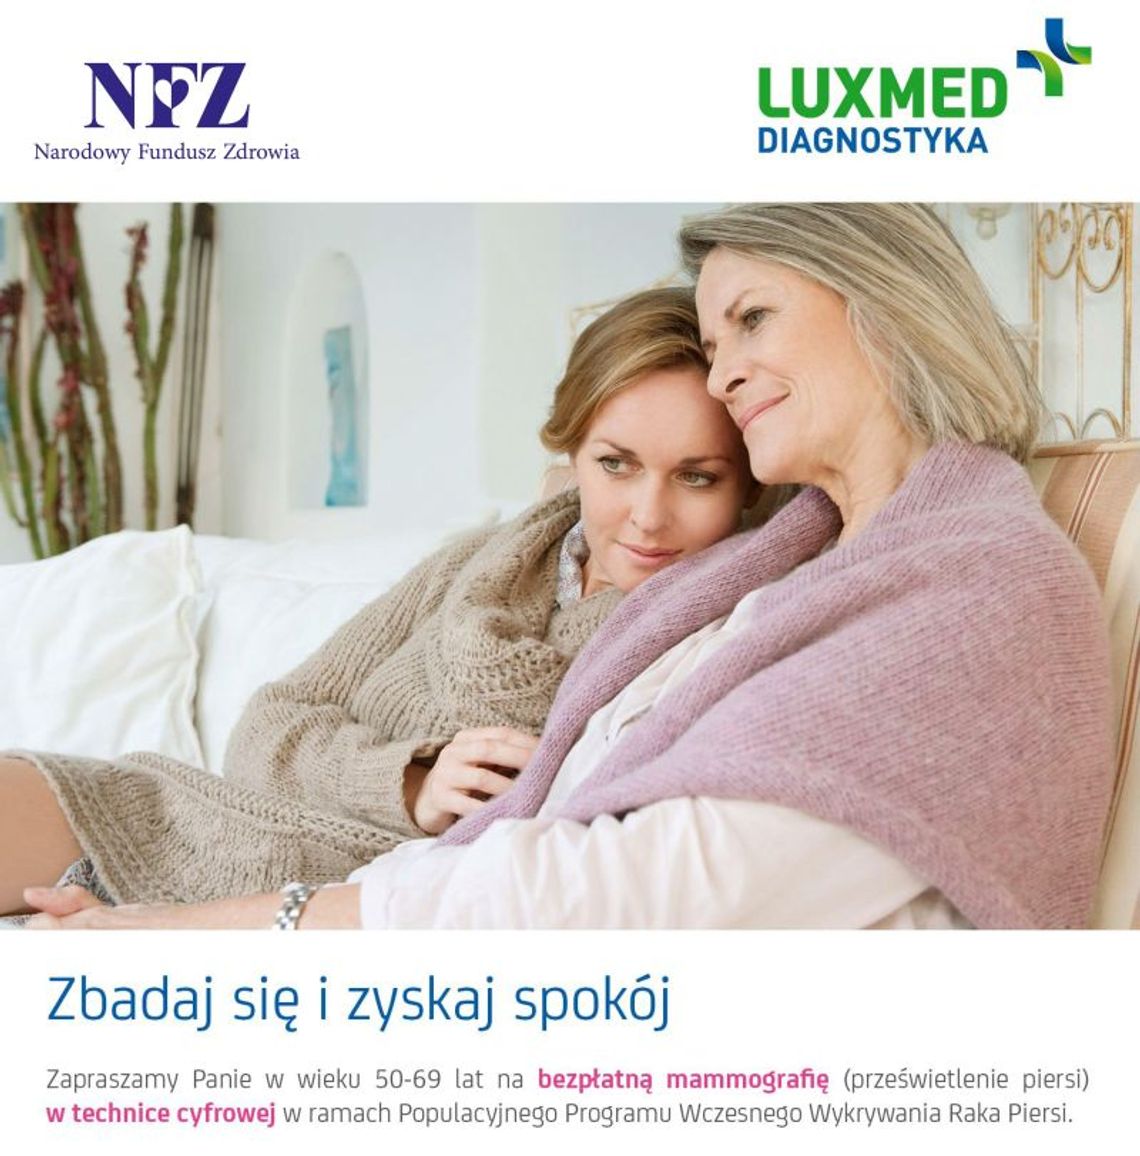 Bezpłatna mammografia w mobilnej pracowni mammograficznej LUX MED w sierpniu w Prabutach, Ryjewie, Sadlinkach